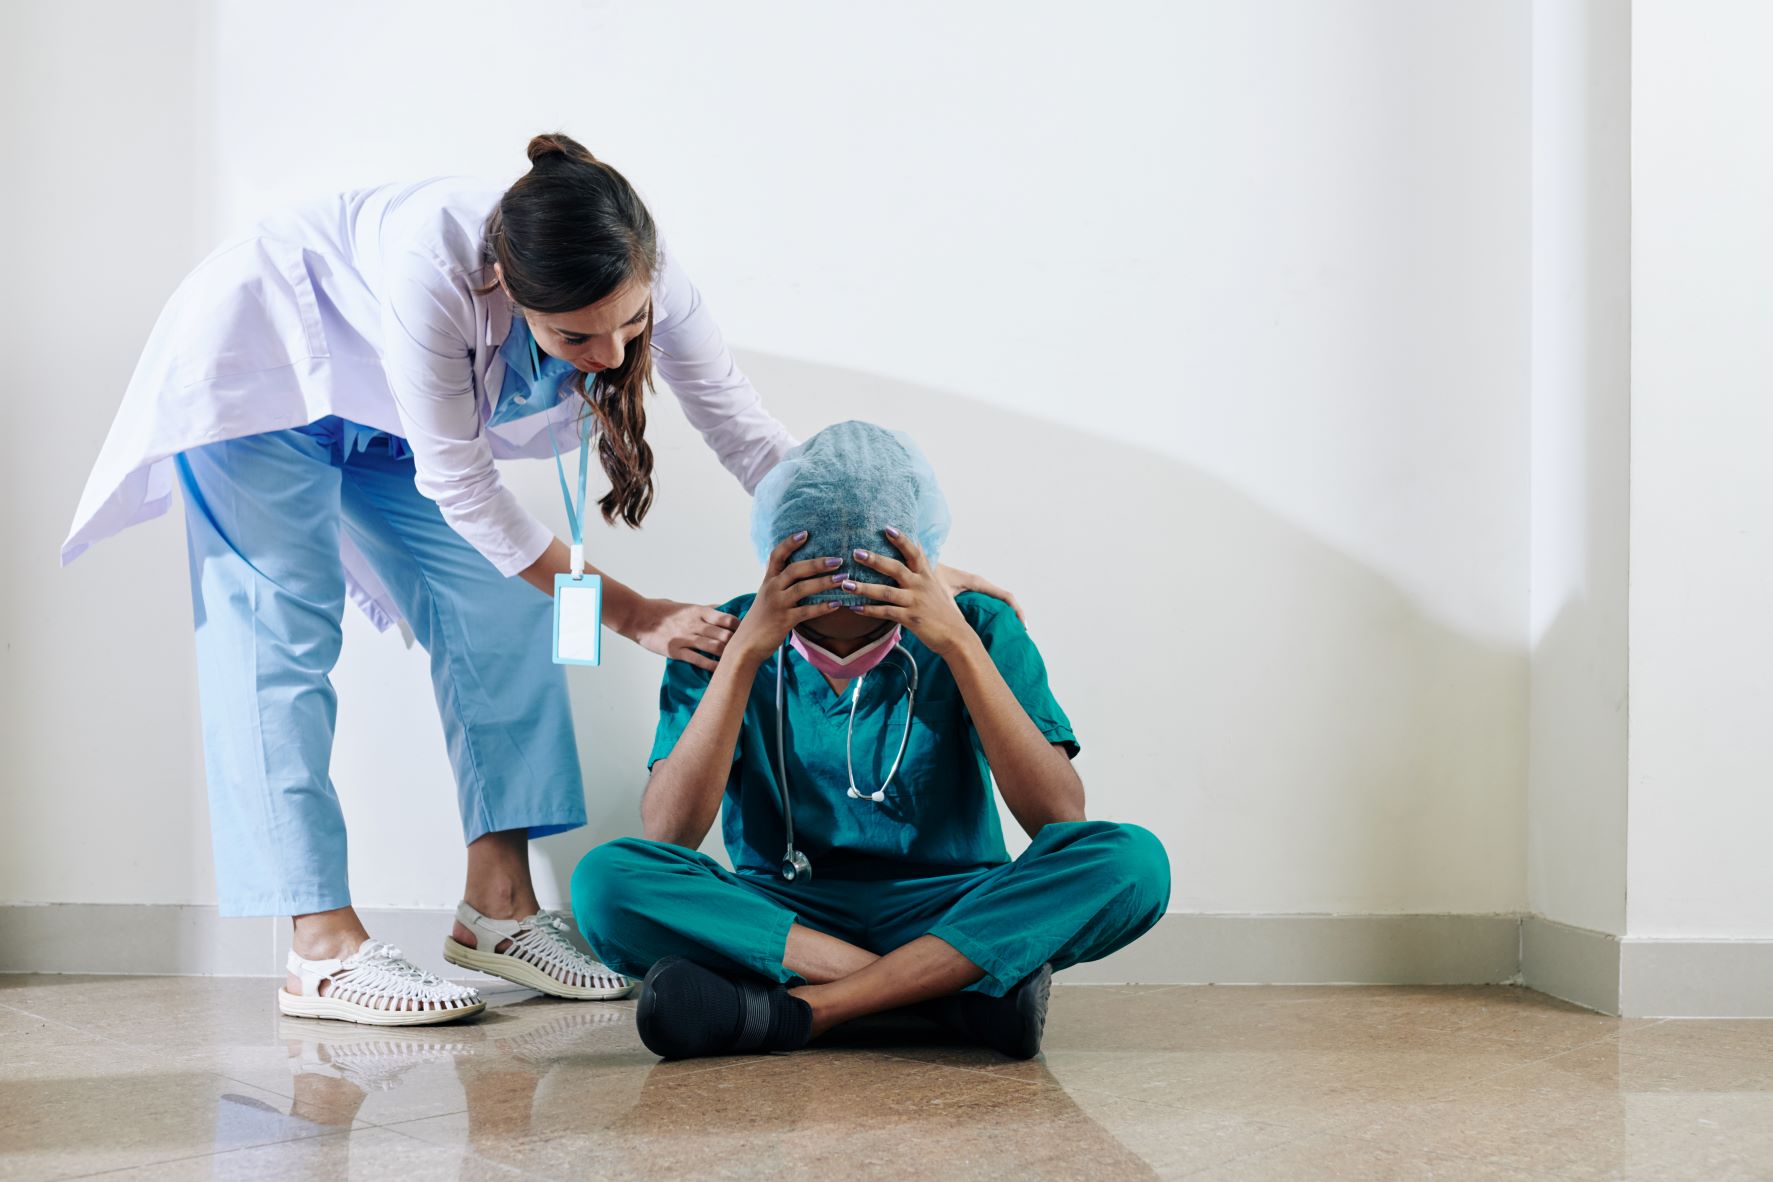 Nursing burnout and frustration